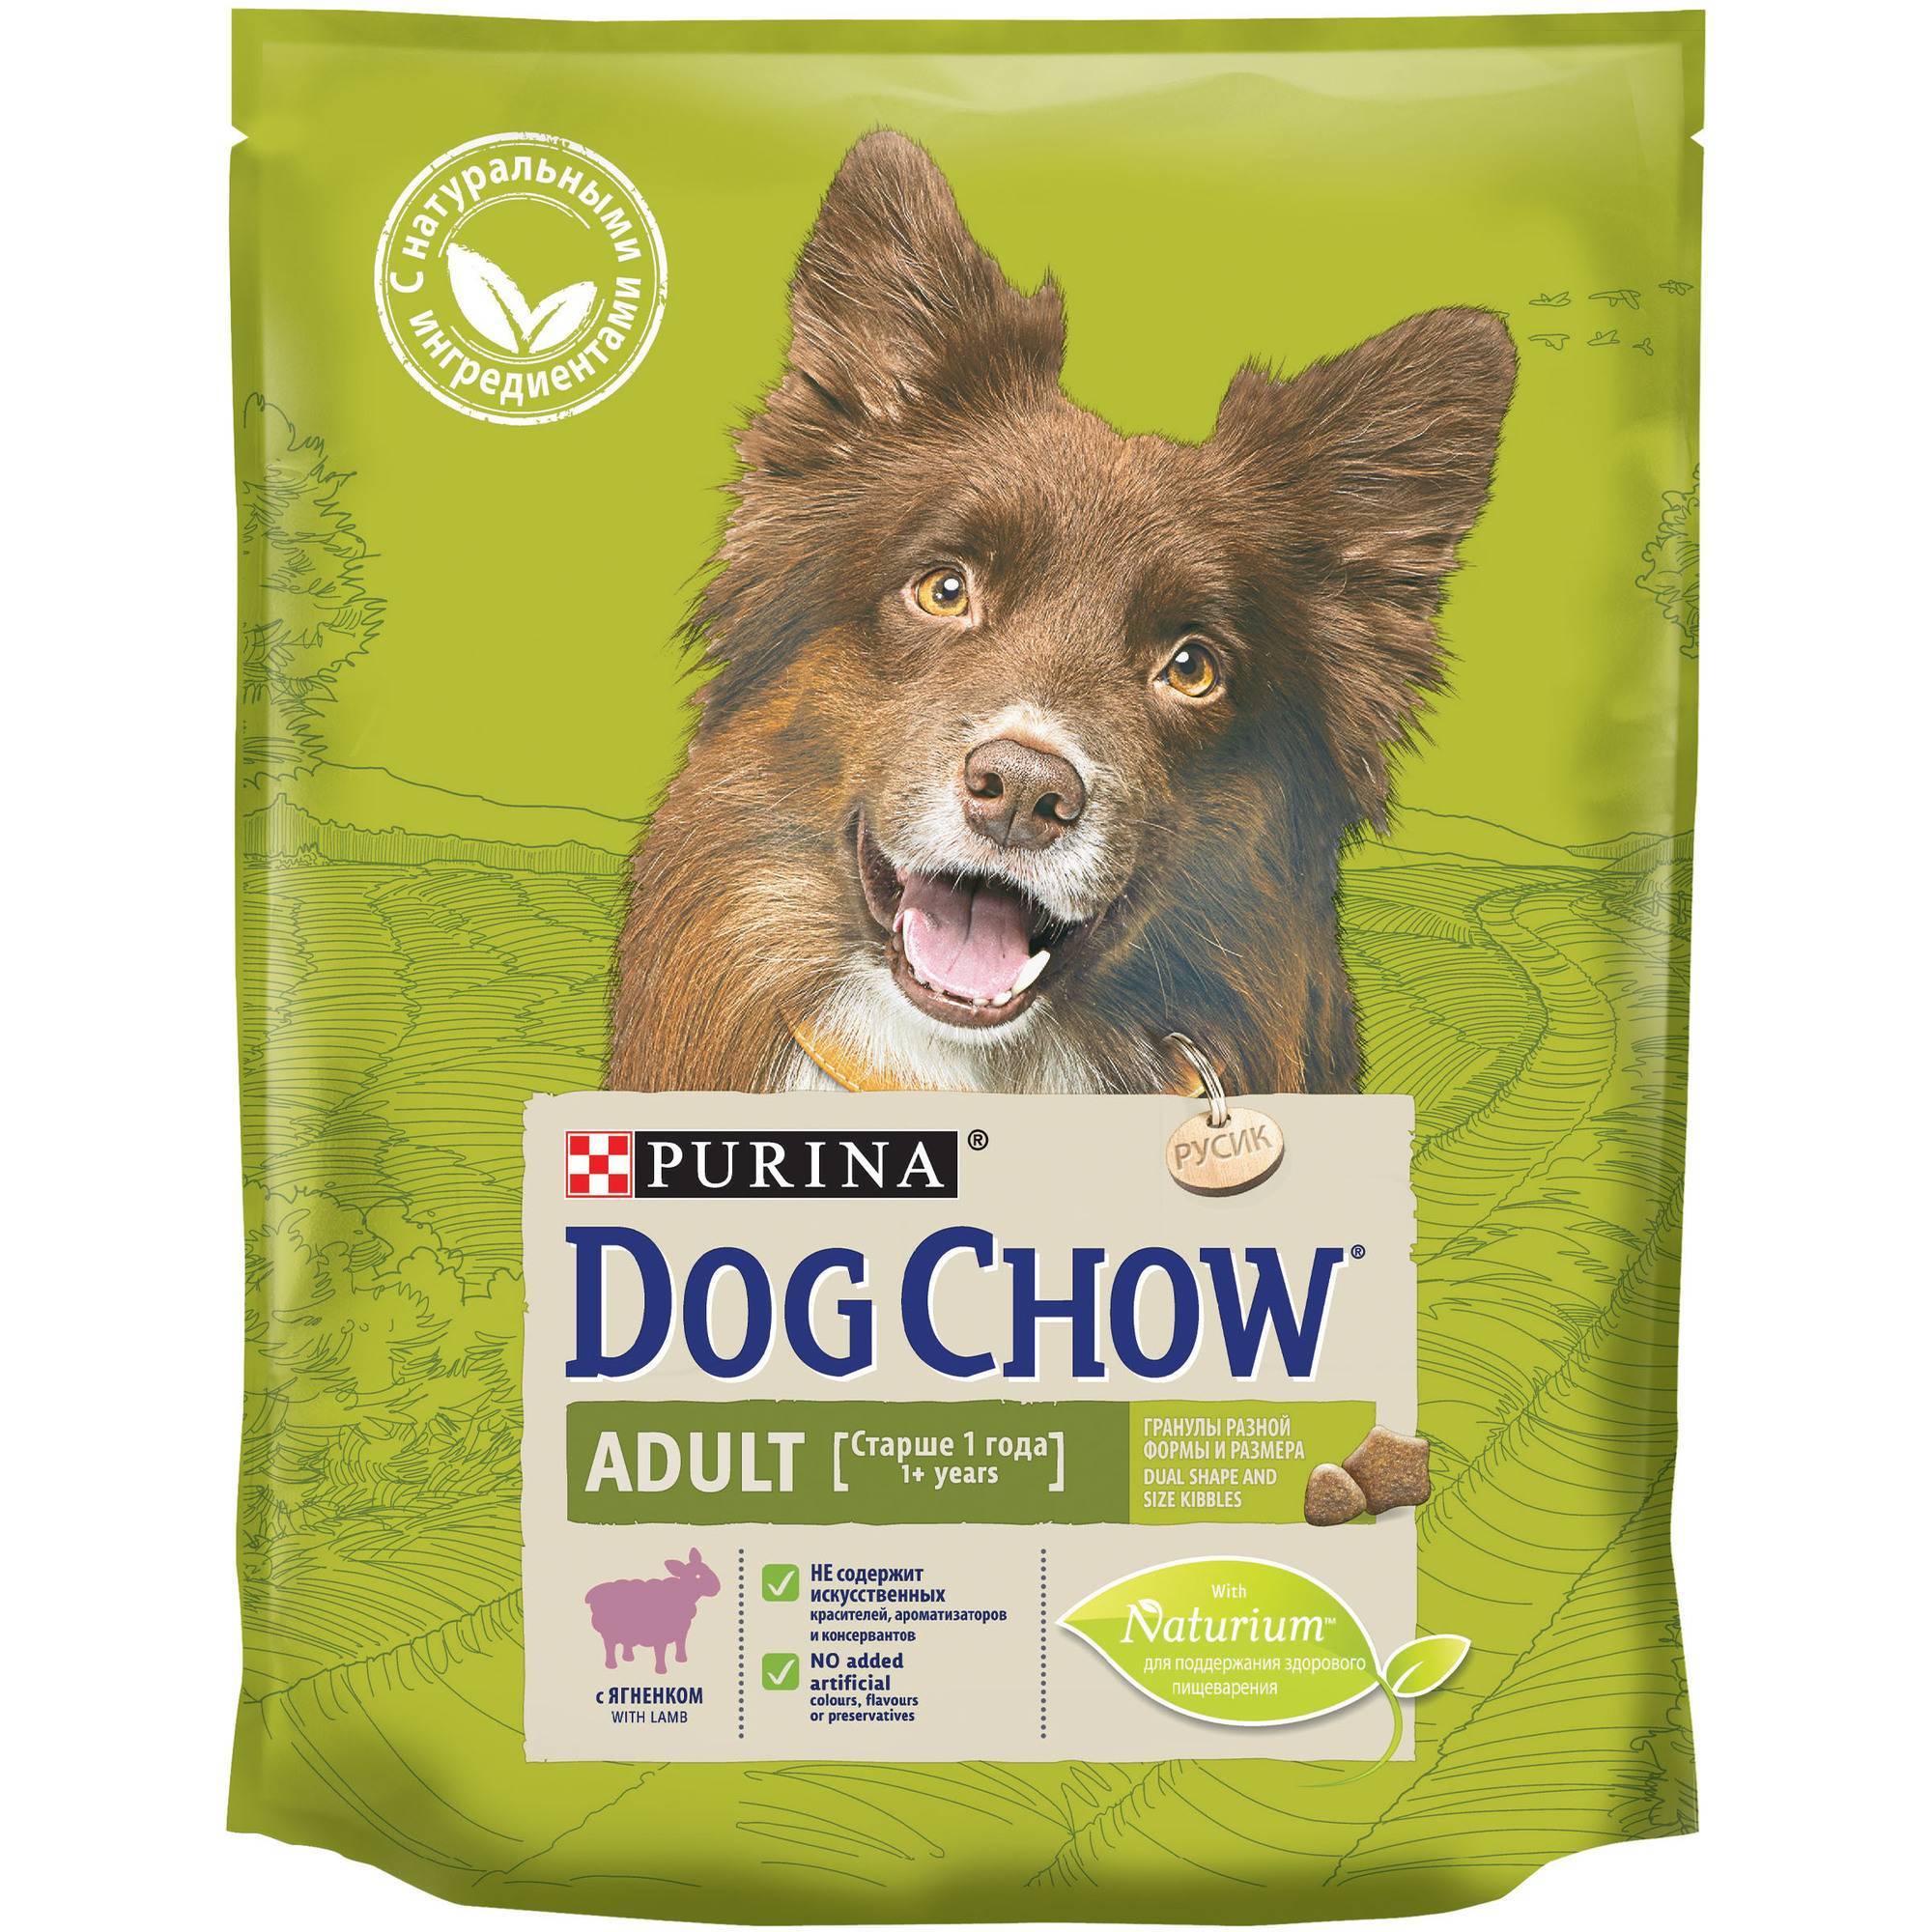 Сухой корм для собак «dog chow» («дог чау») — обзор и описание линейки, состав, виды, плюсы и минусы